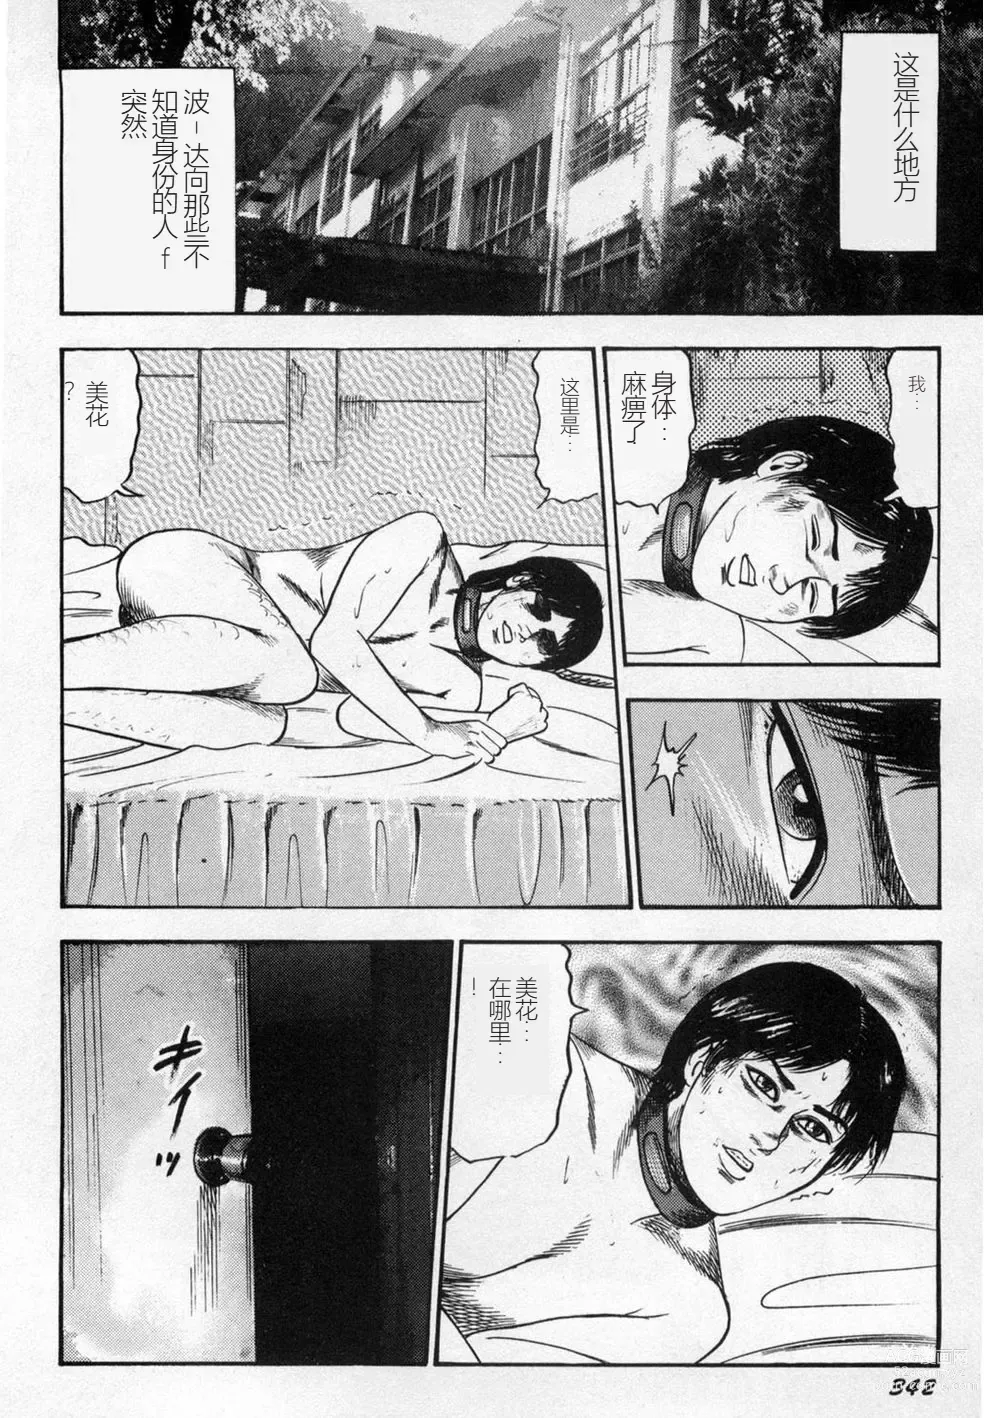 Page 343 of manga Injuu Shimai